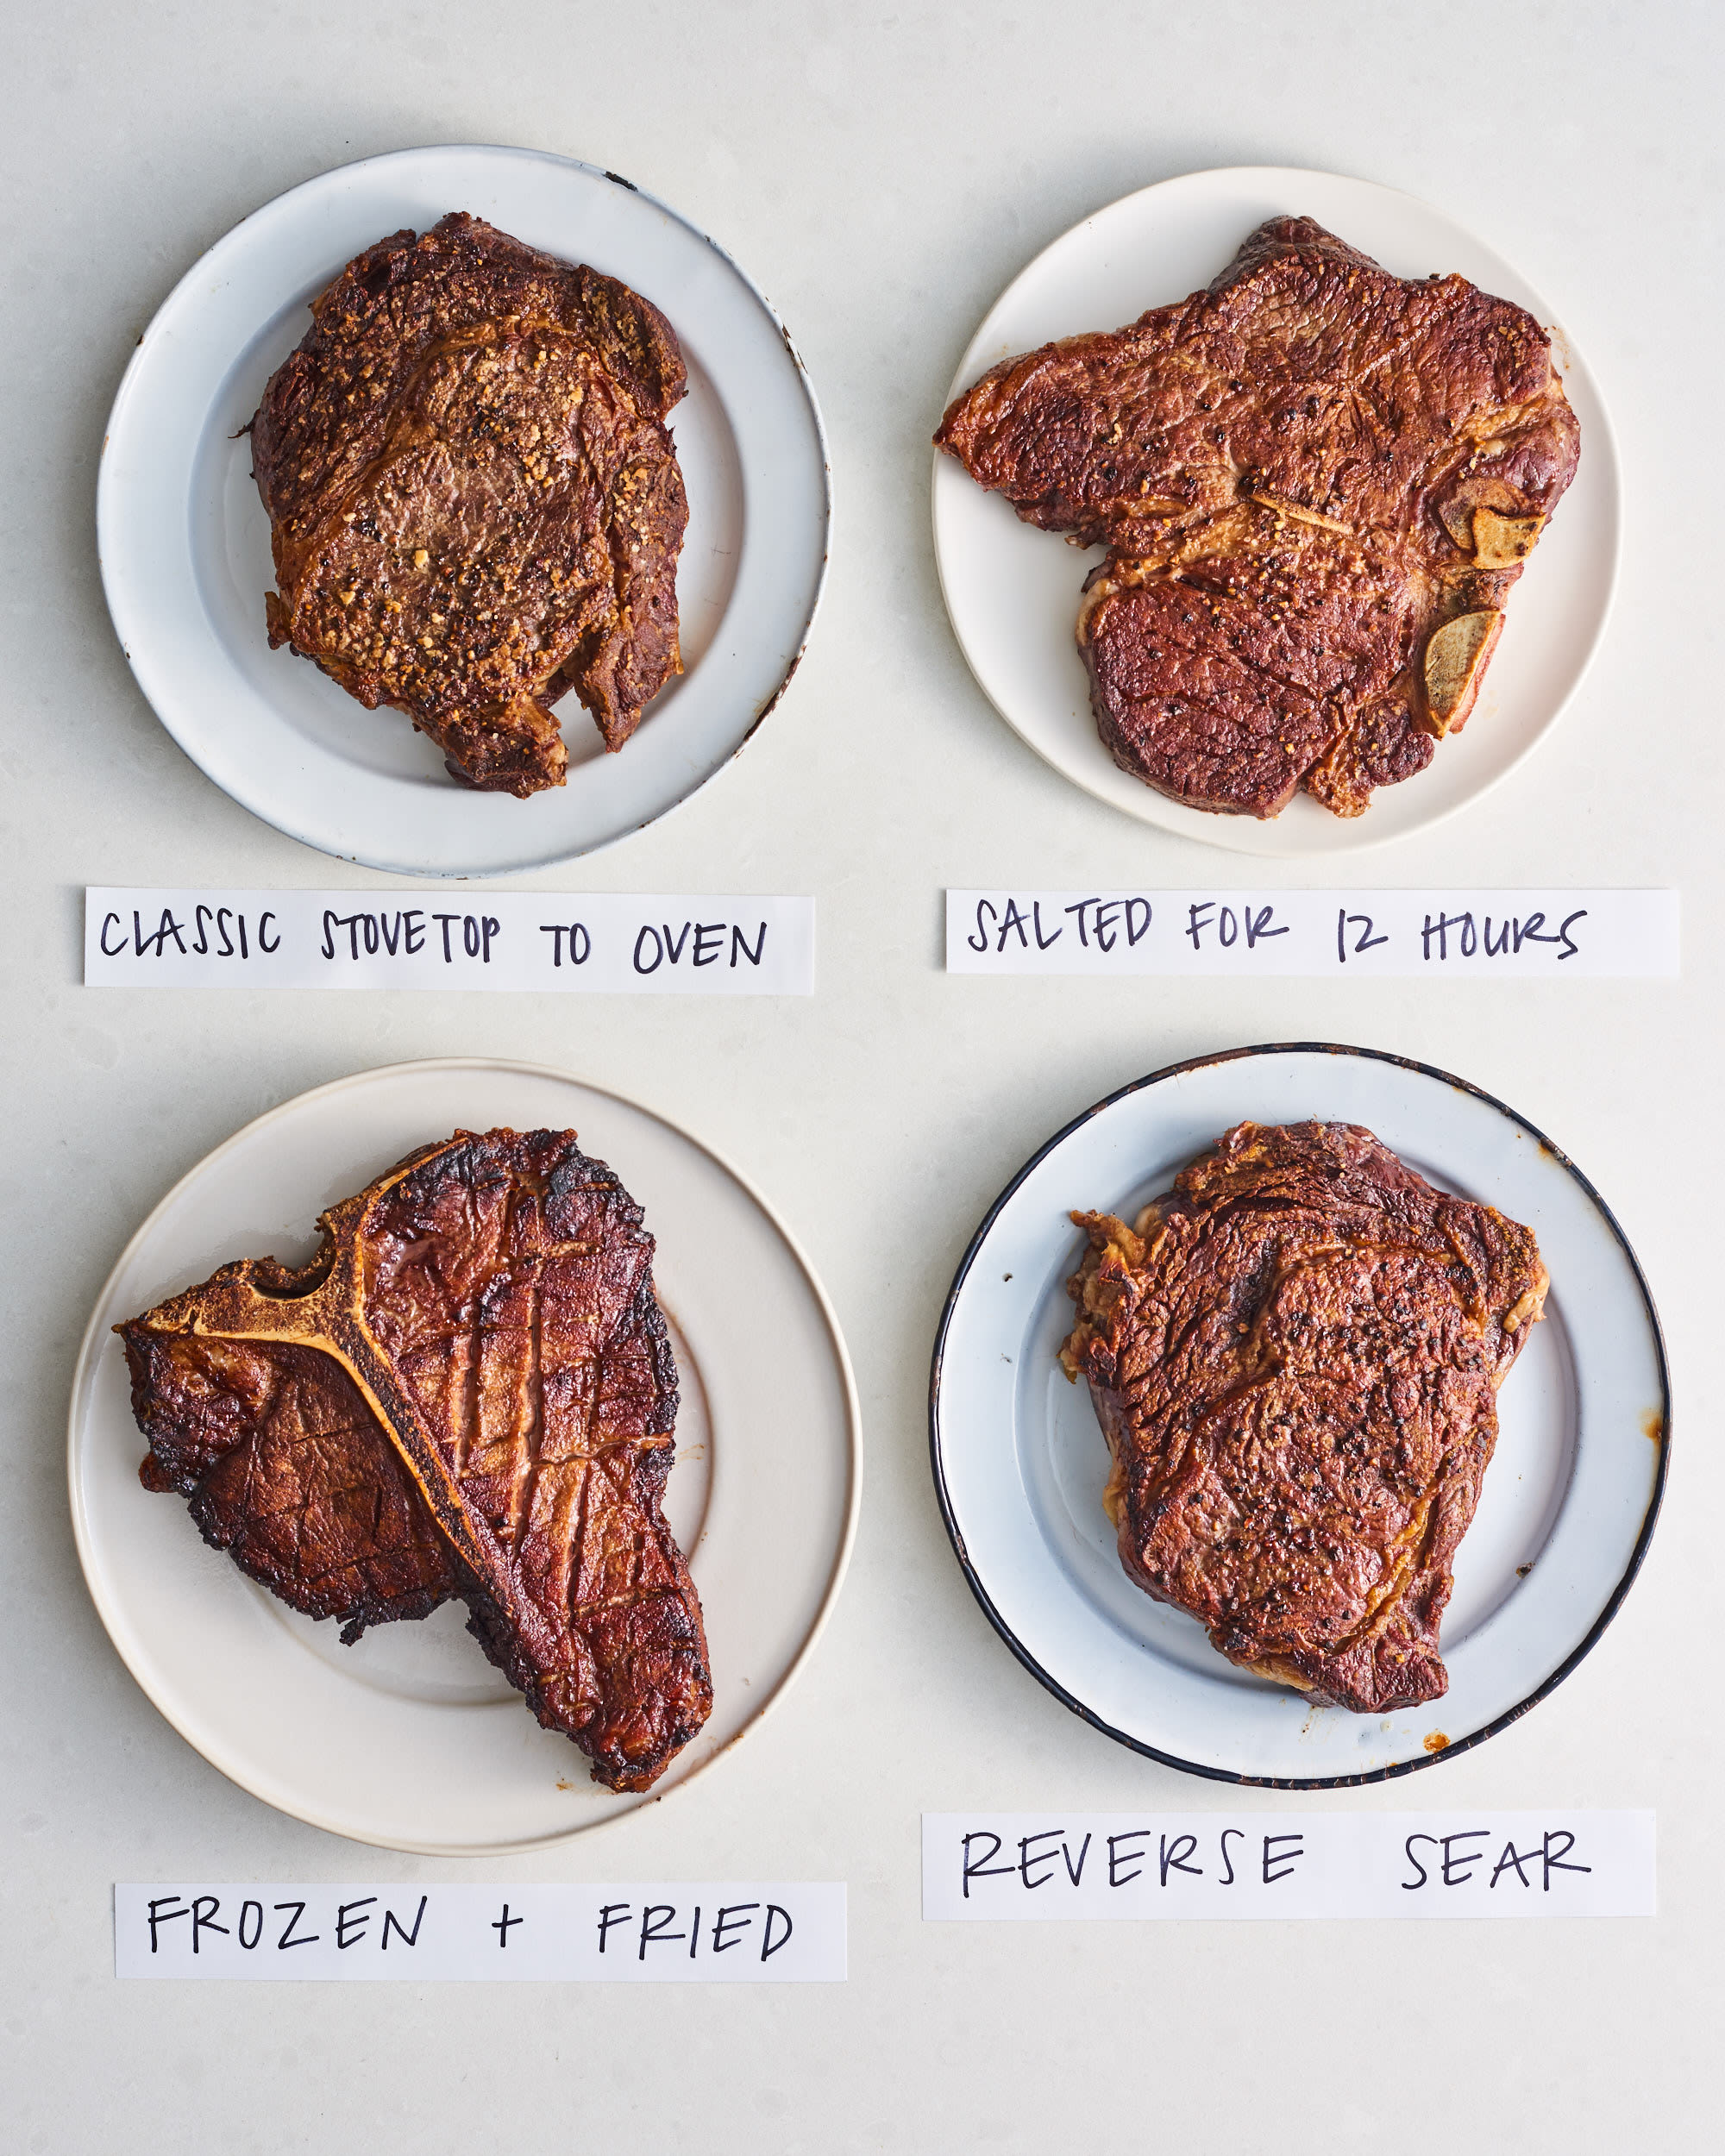 Steak cooking techniques